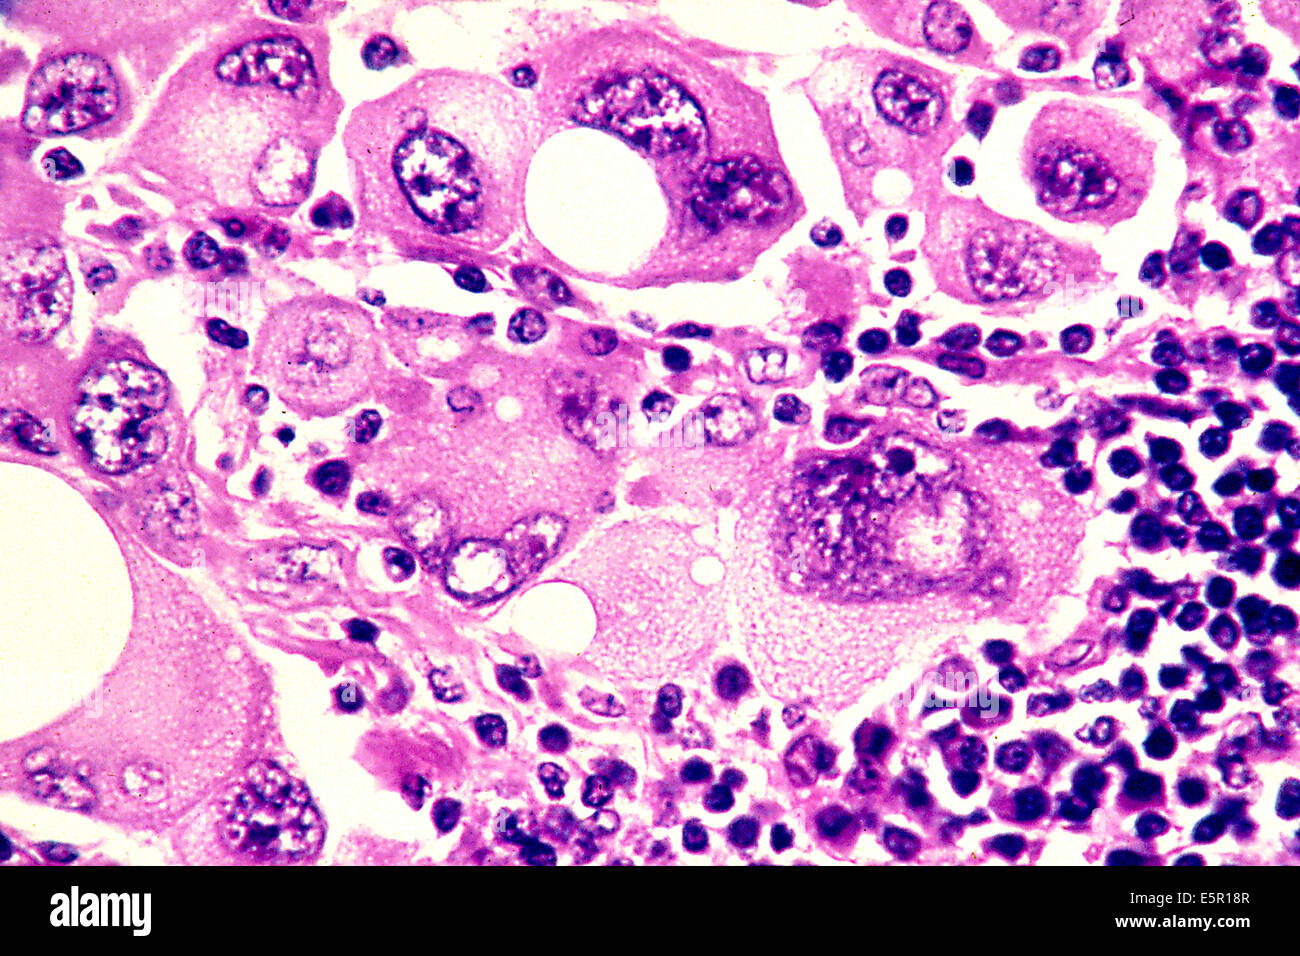 skin cancer cells vs normal cells